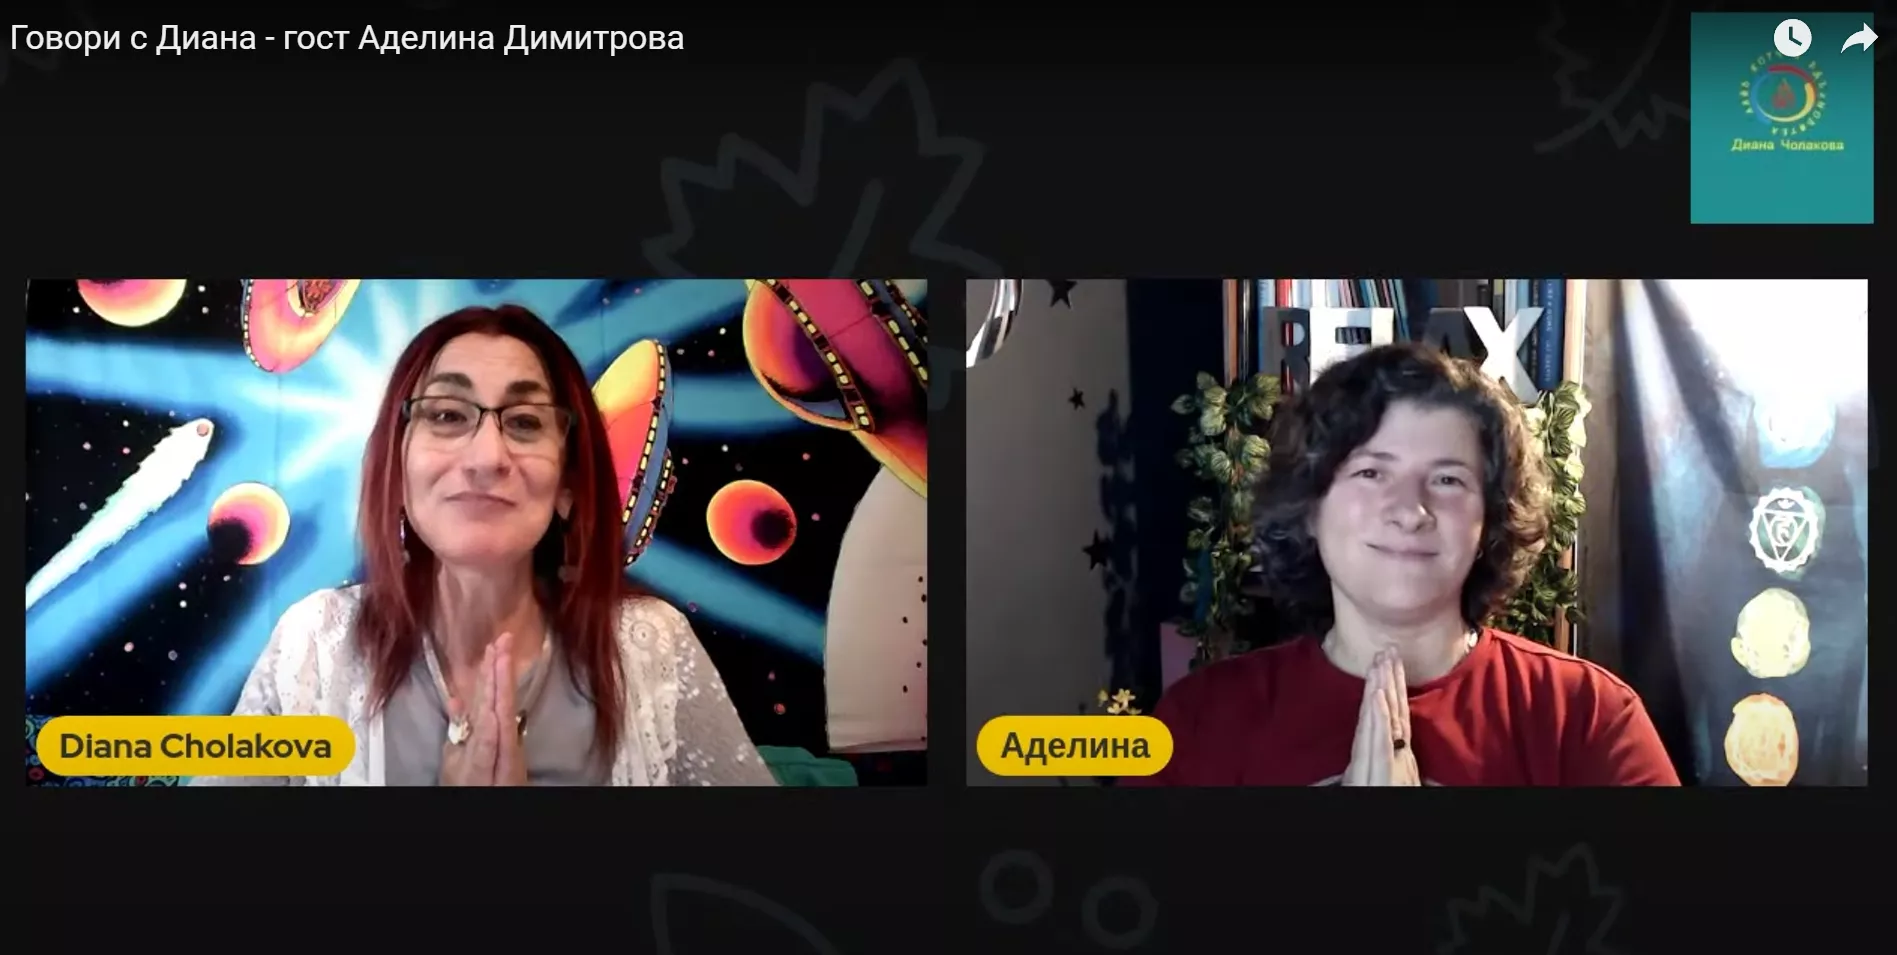 Говори с Диана - гост Аделина Димитрова